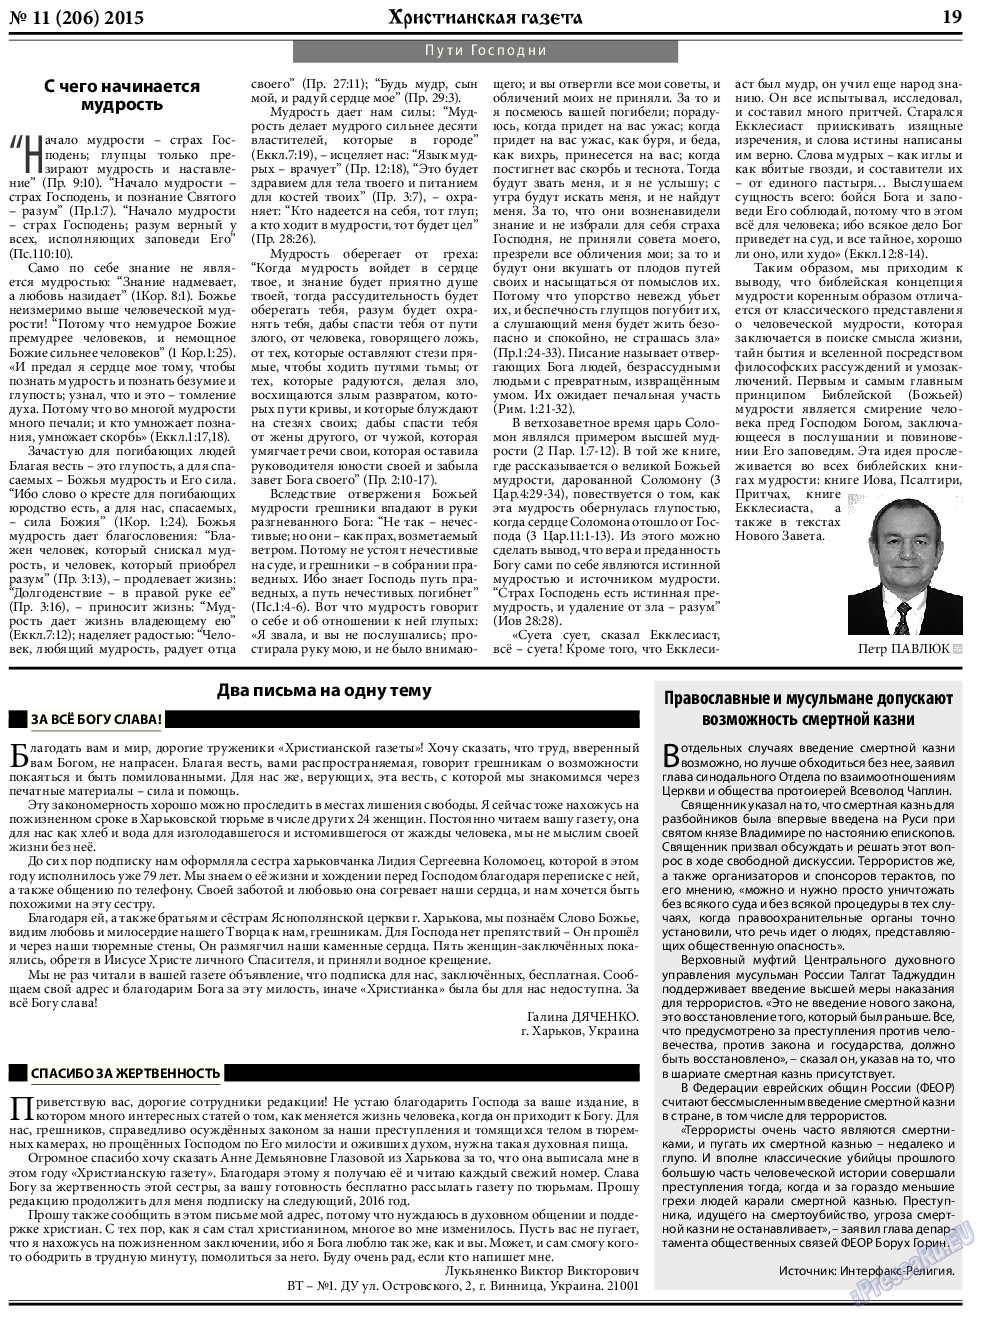 Христианская газета, газета. 2015 №11 стр.27